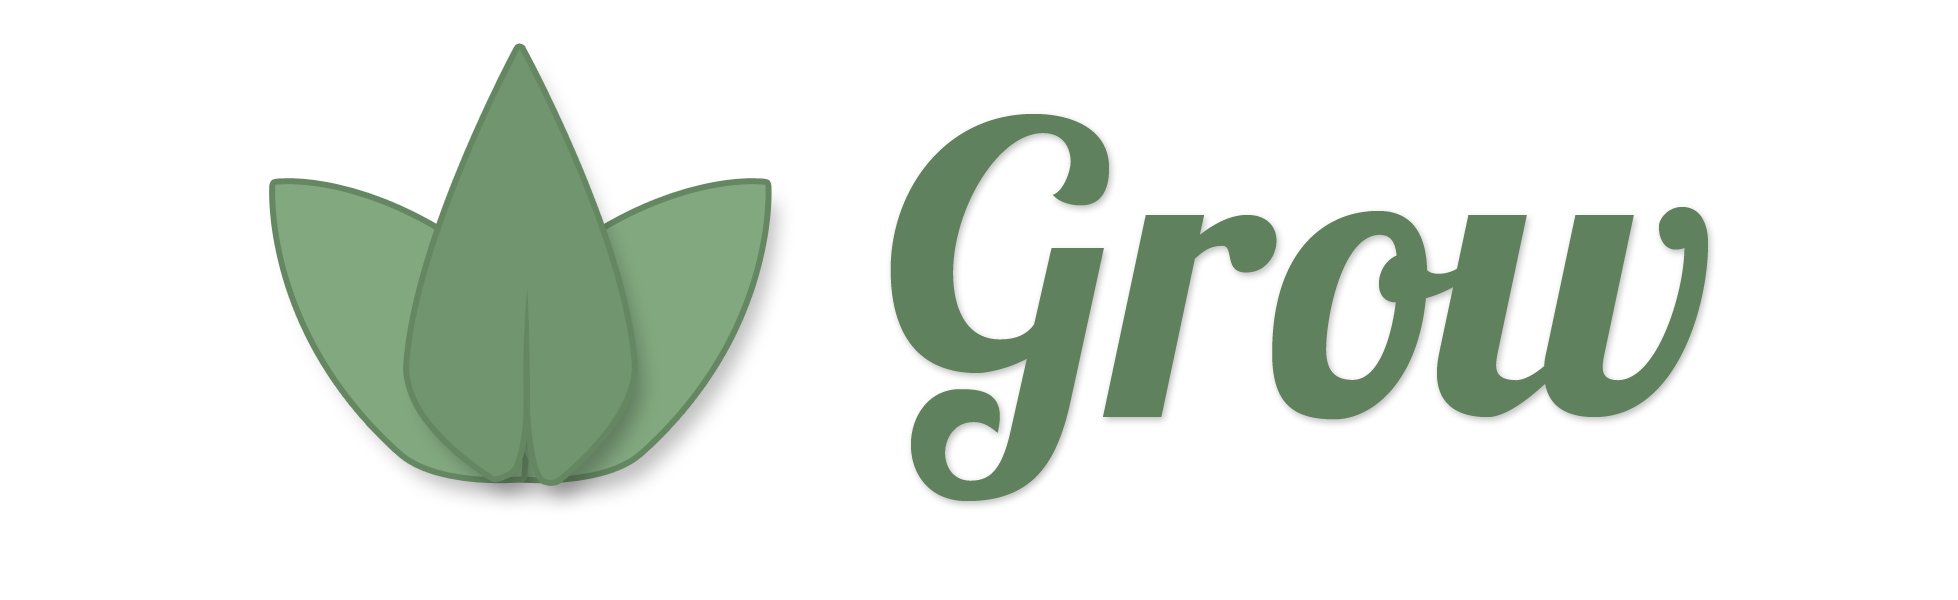 Grow-NI-logo-large-whitebg.jpg